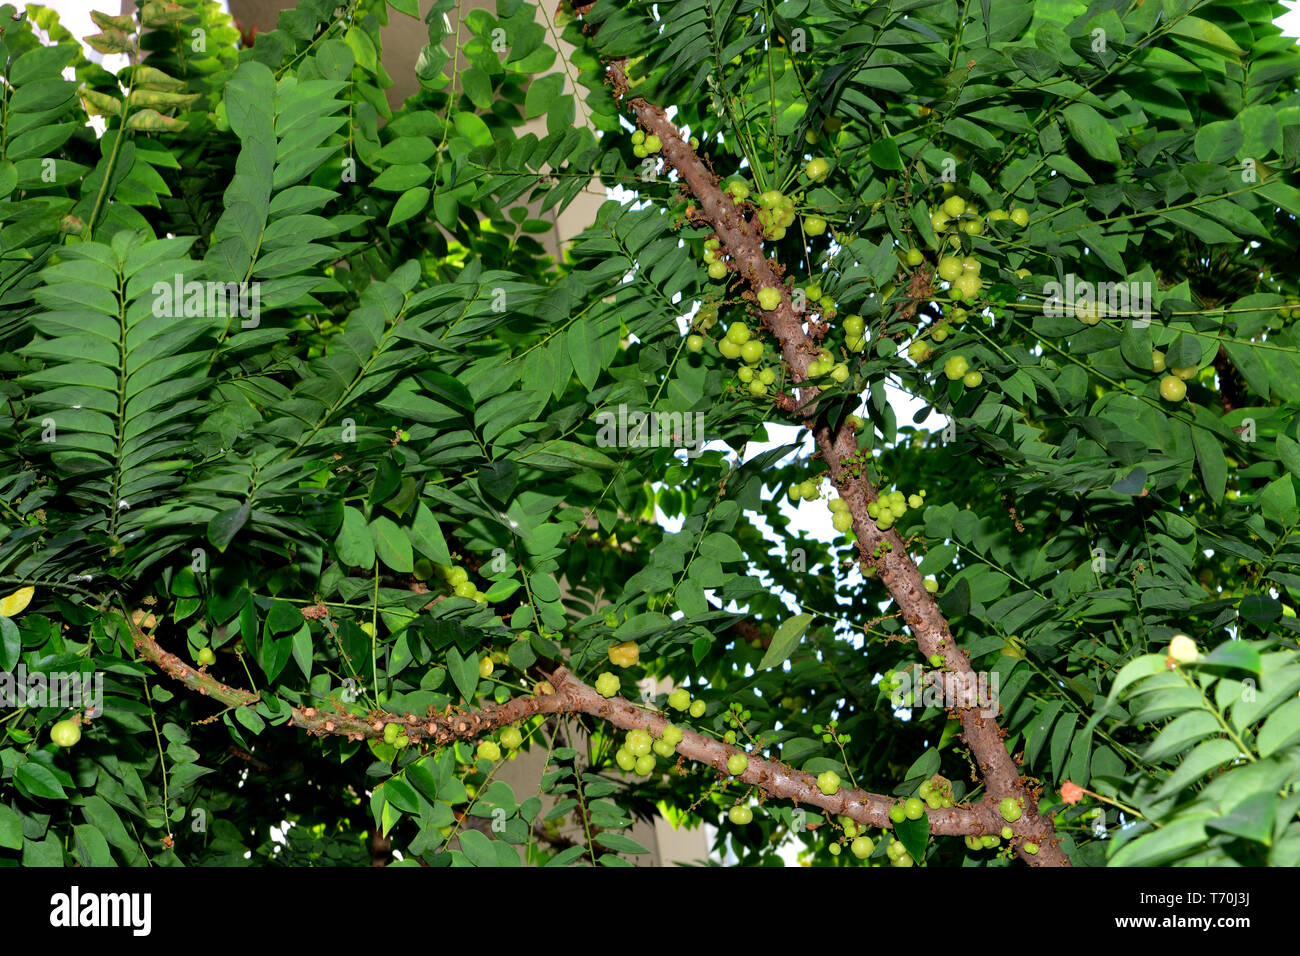 star gooseberry tree, Phyllanthus acidus, known as the Otaheite gooseberry, Malay gooseberry, Tahitian gooseberry, Country gooseberry, Star gooseberry Stock Photo